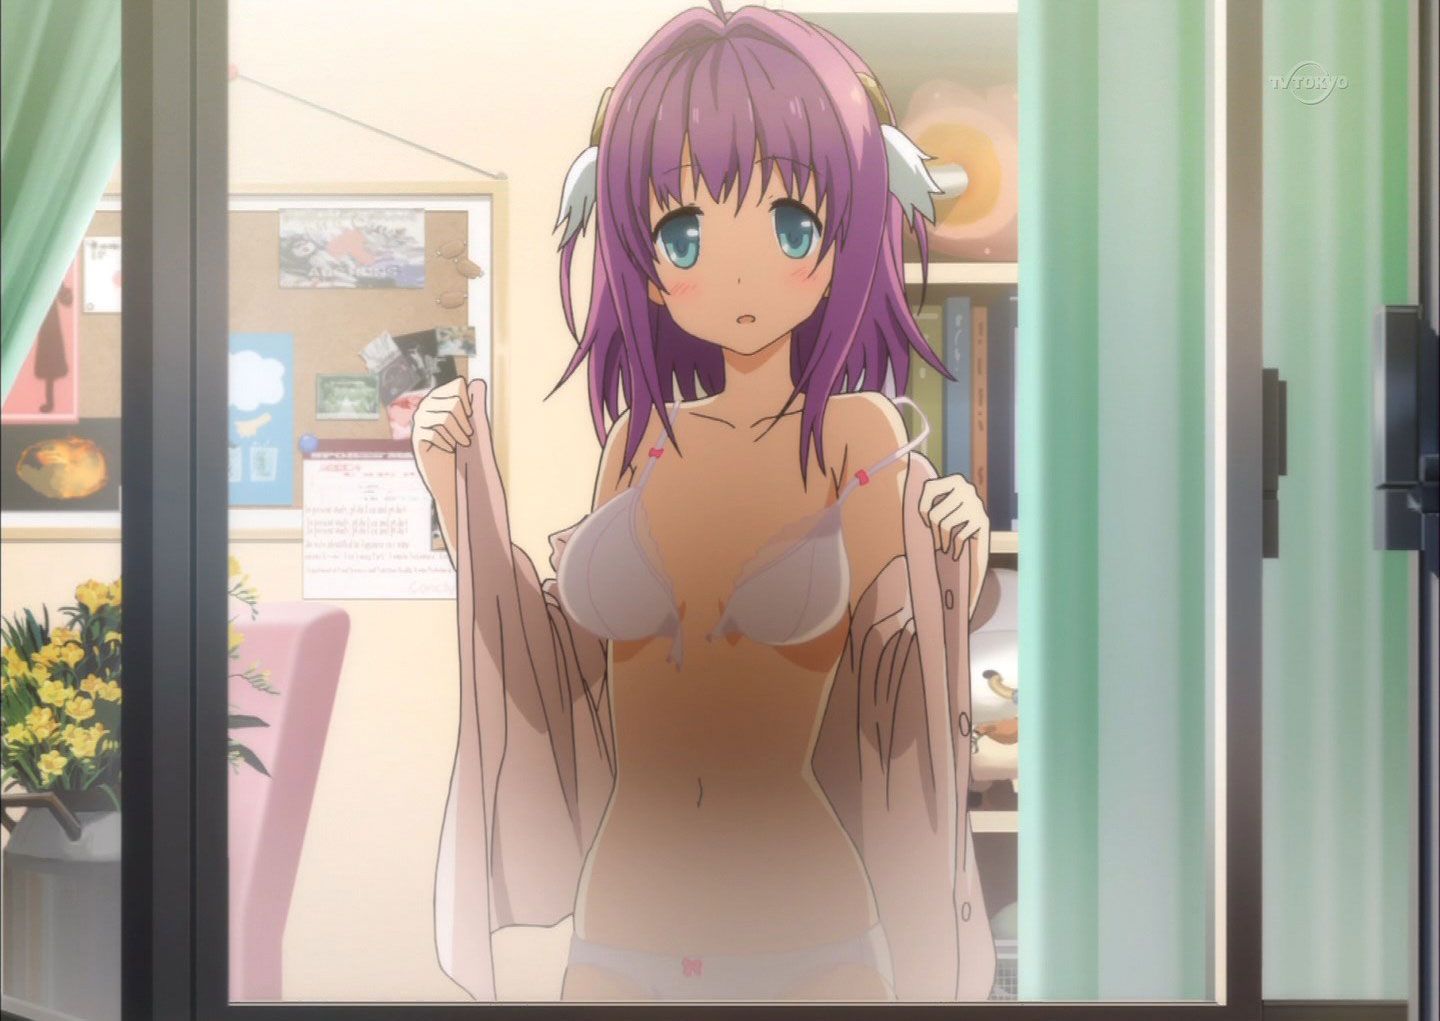 [Image] depiction would no anime girl pants, that I'm going through high iiiiiii 8